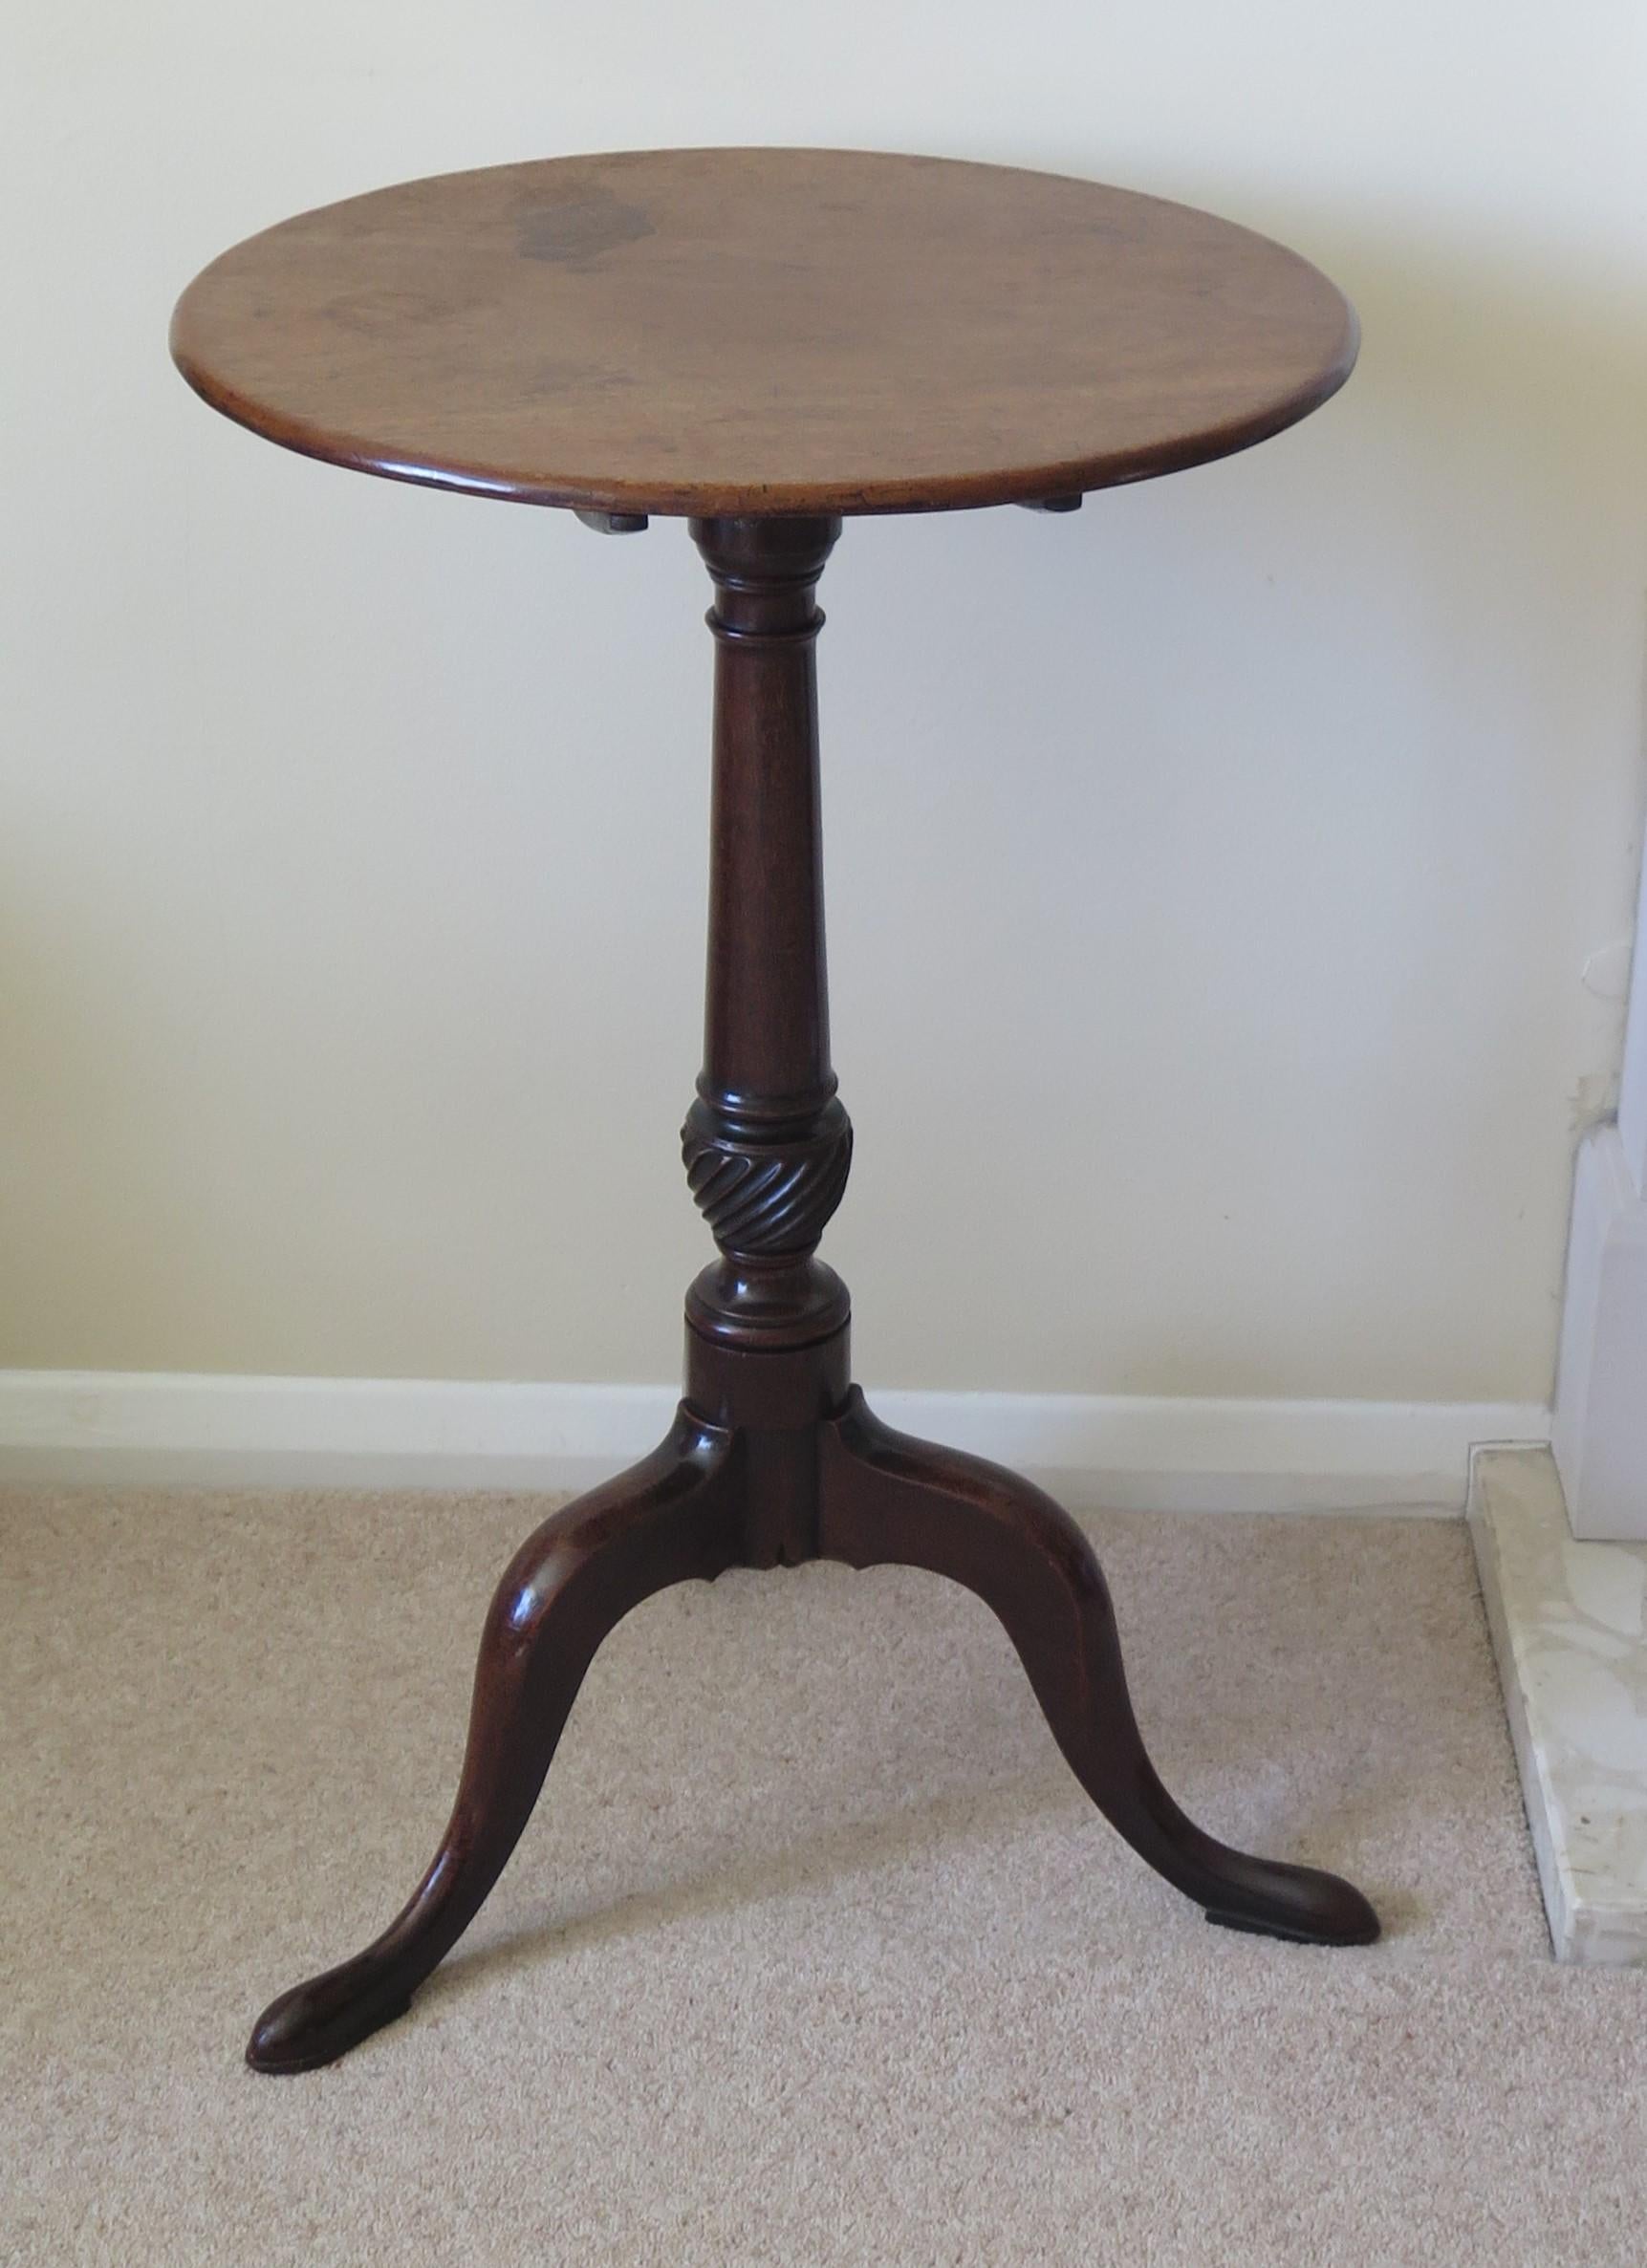 Il s'agit d'une table tripode ou table à vin en bois dur massif, élégante et magnifiquement proportionnée, avec un plateau inclinable, datant de la période Chippendale du milieu de l'époque géorgienne, vers 1760.

Le plateau circulaire est fait